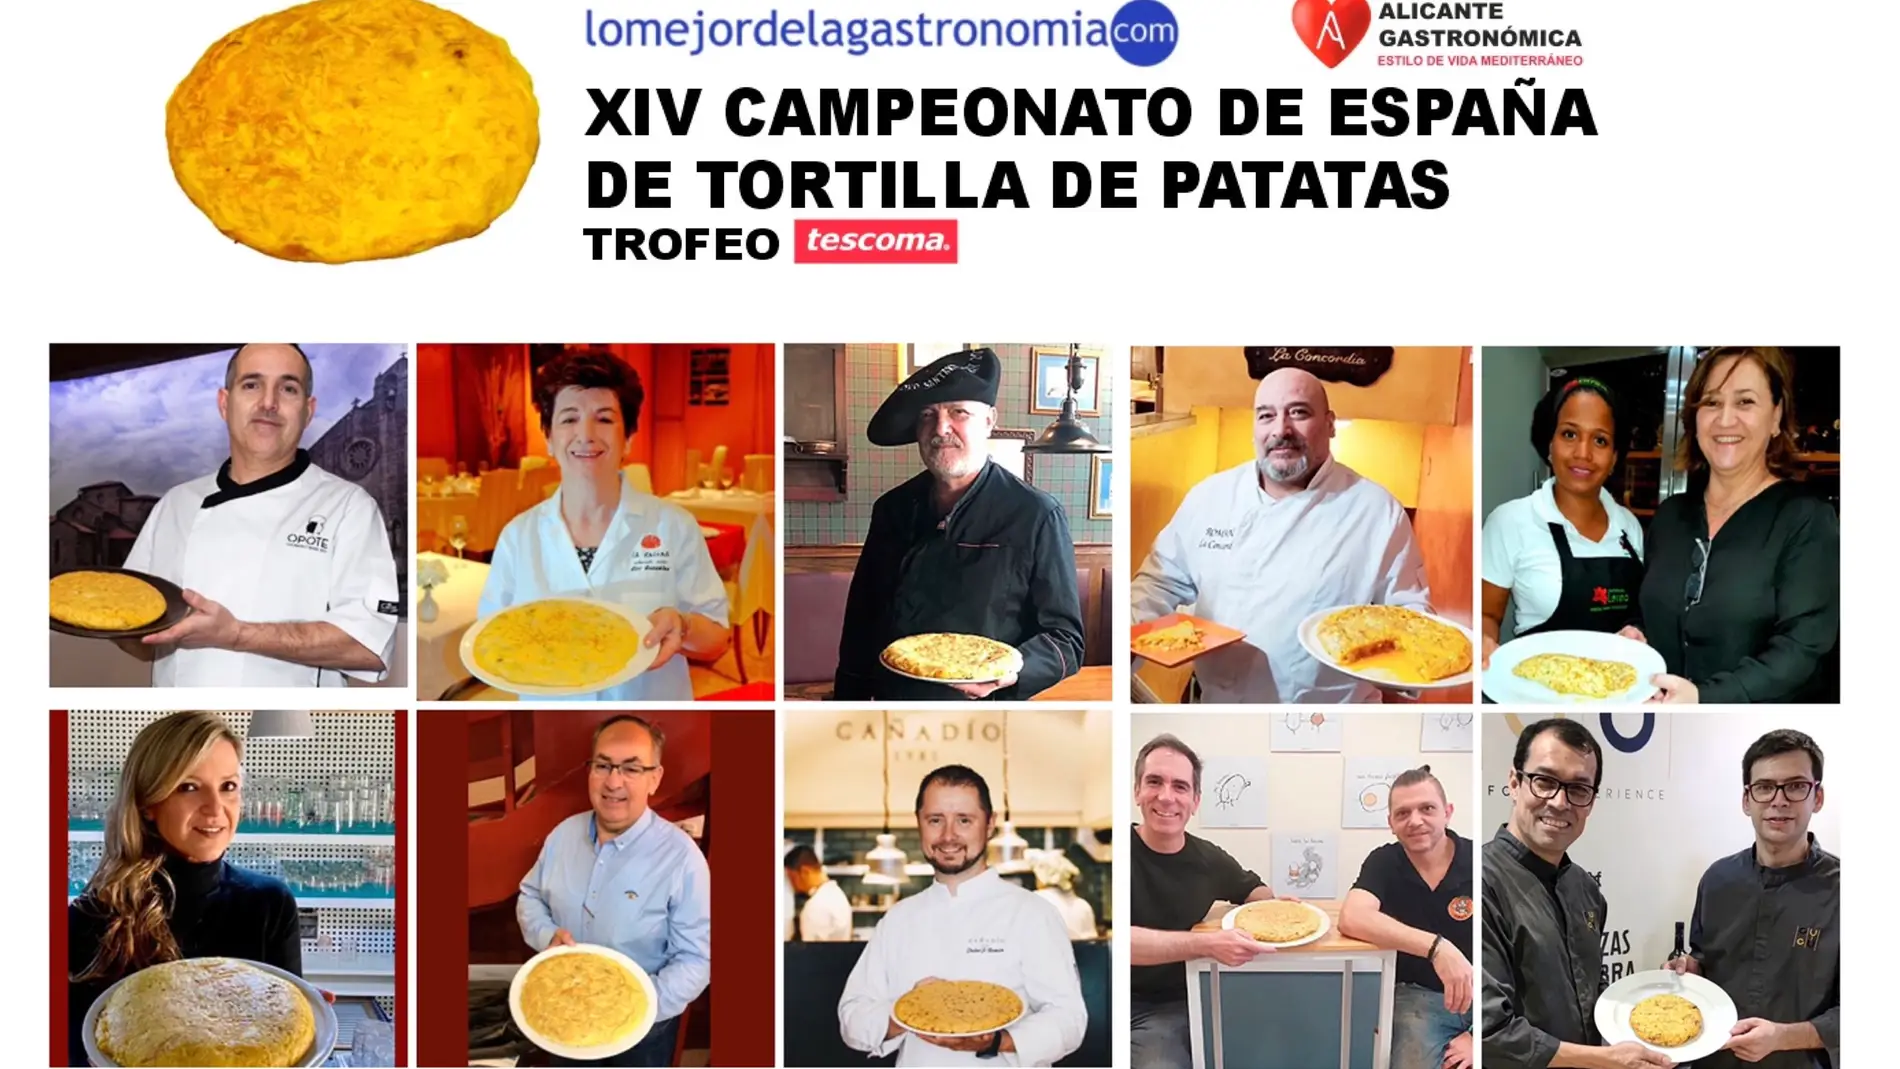 XIV Campeonato de España de Tortilla de Patatas 10 chefs competirán por elaborar la mejor tortilla en Alicante Gastronómica 2021 